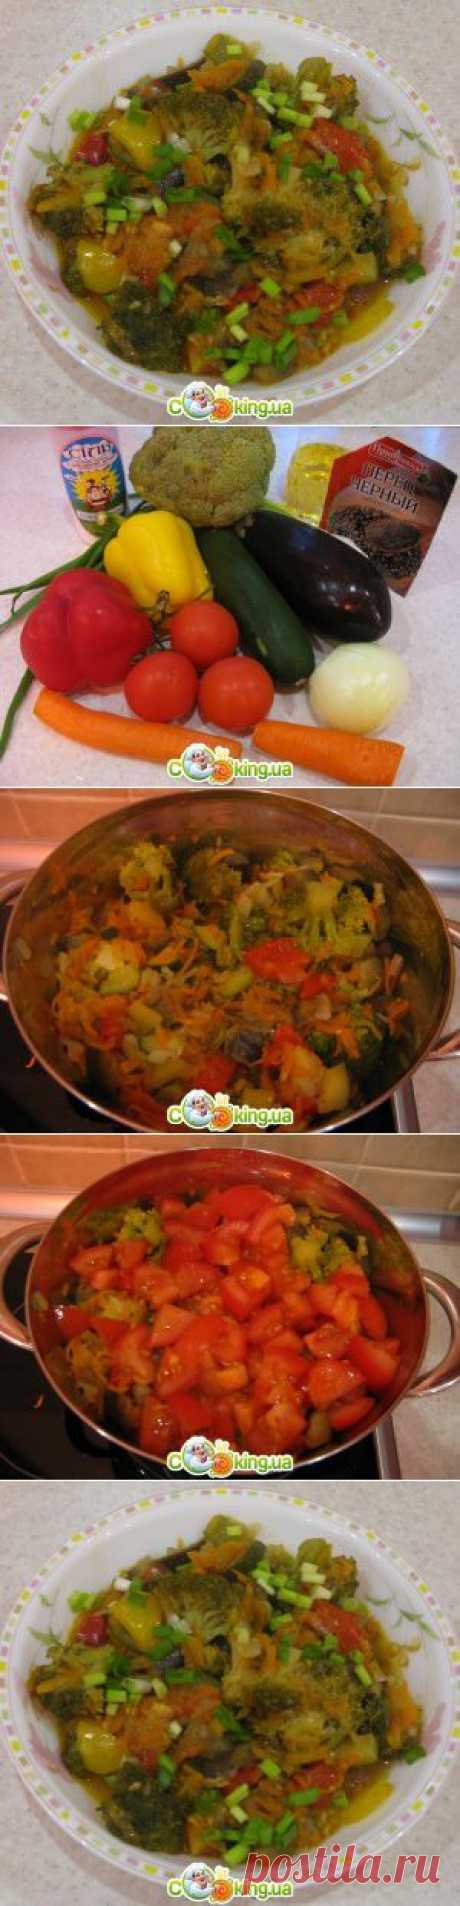 Овощное рагу фото рецепт, приготовление овощного рагу рецепт с фото - Cooking.ua